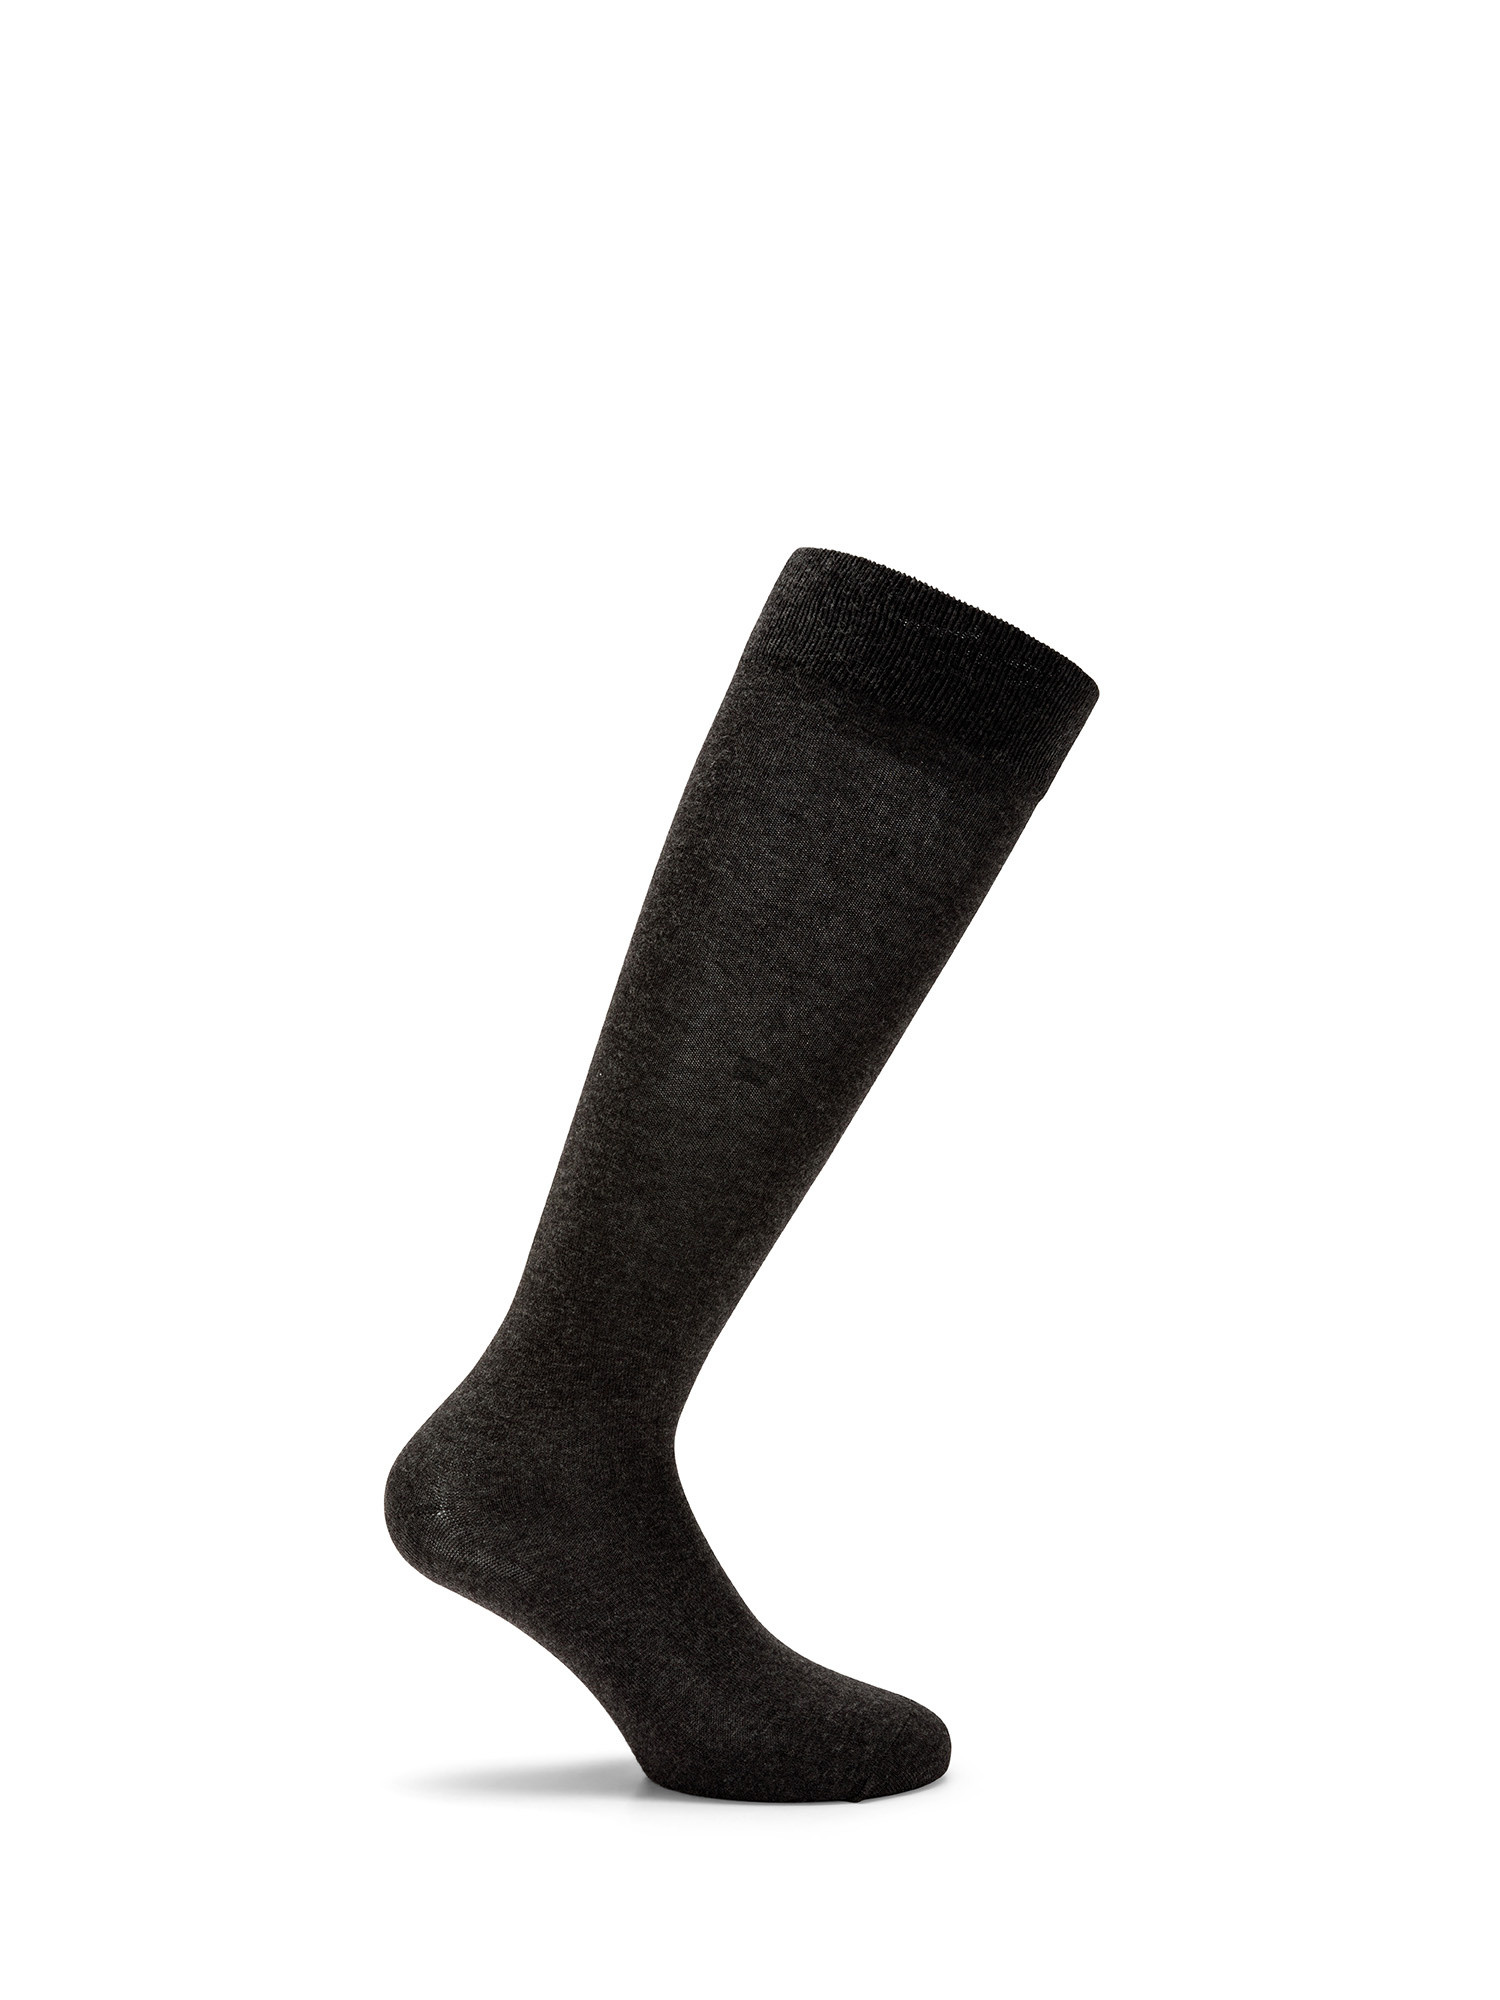 Luca D'Altieri - Set of 3 patterned long socks, Grey, large image number 1